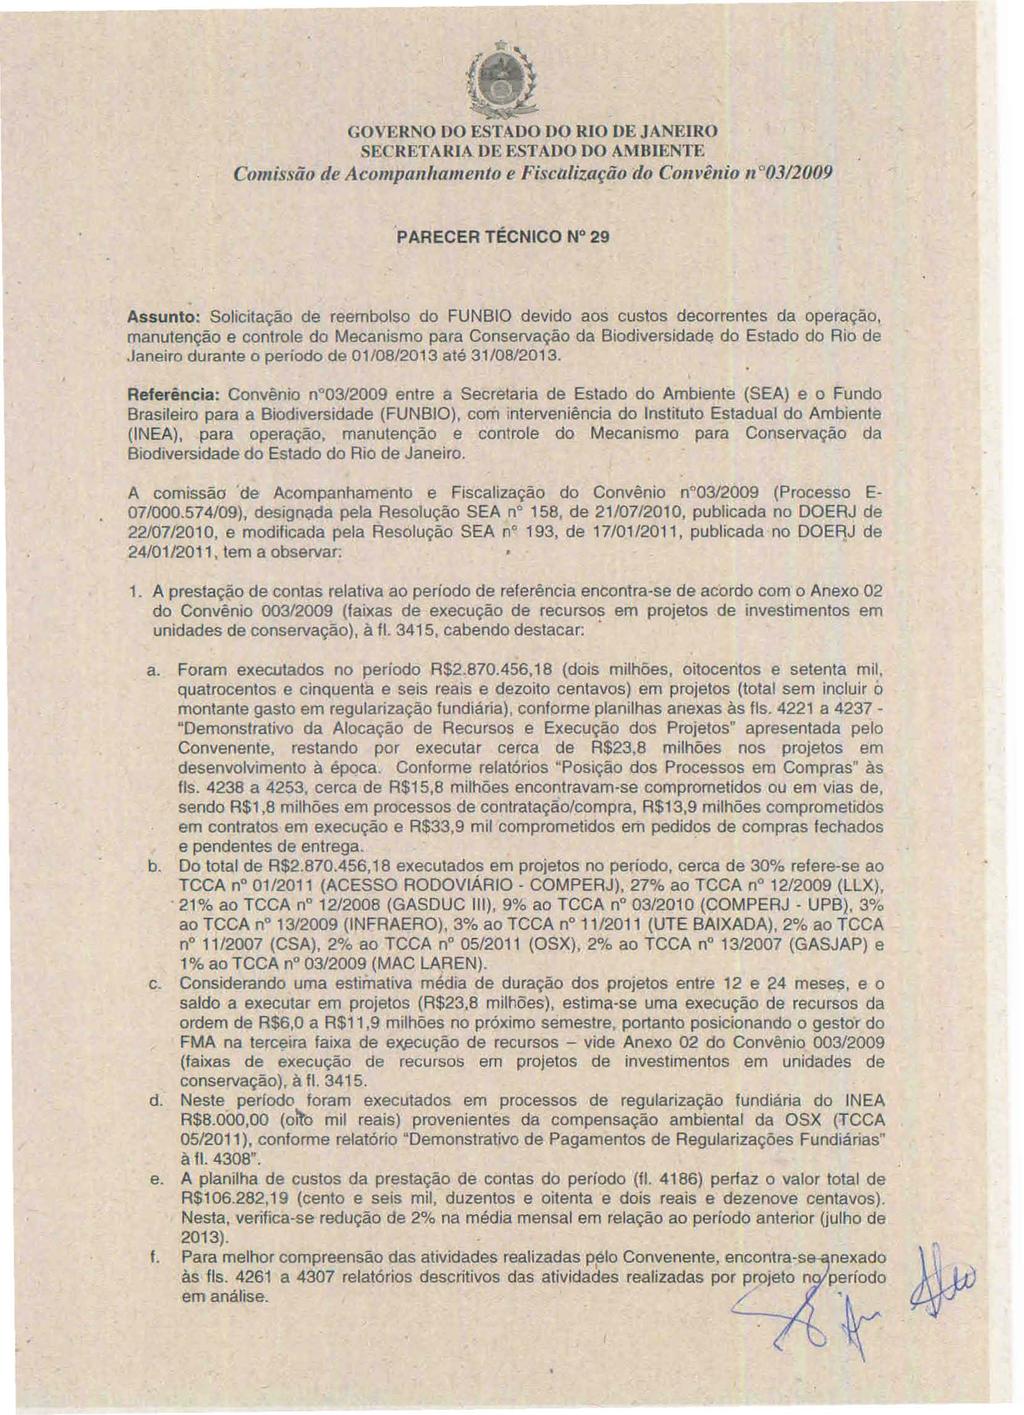 GOVERNO no ESTADO DO RIO DE J ANEIRO SECRETARIA DE ESTADO DO AMBIENTE Comissão de Acompa/lhamento e Fiscalização cio Convê/lio /1 03/2009 'PARECER TÉCNICO N 29 Assunto: Solicitação de reembolso do